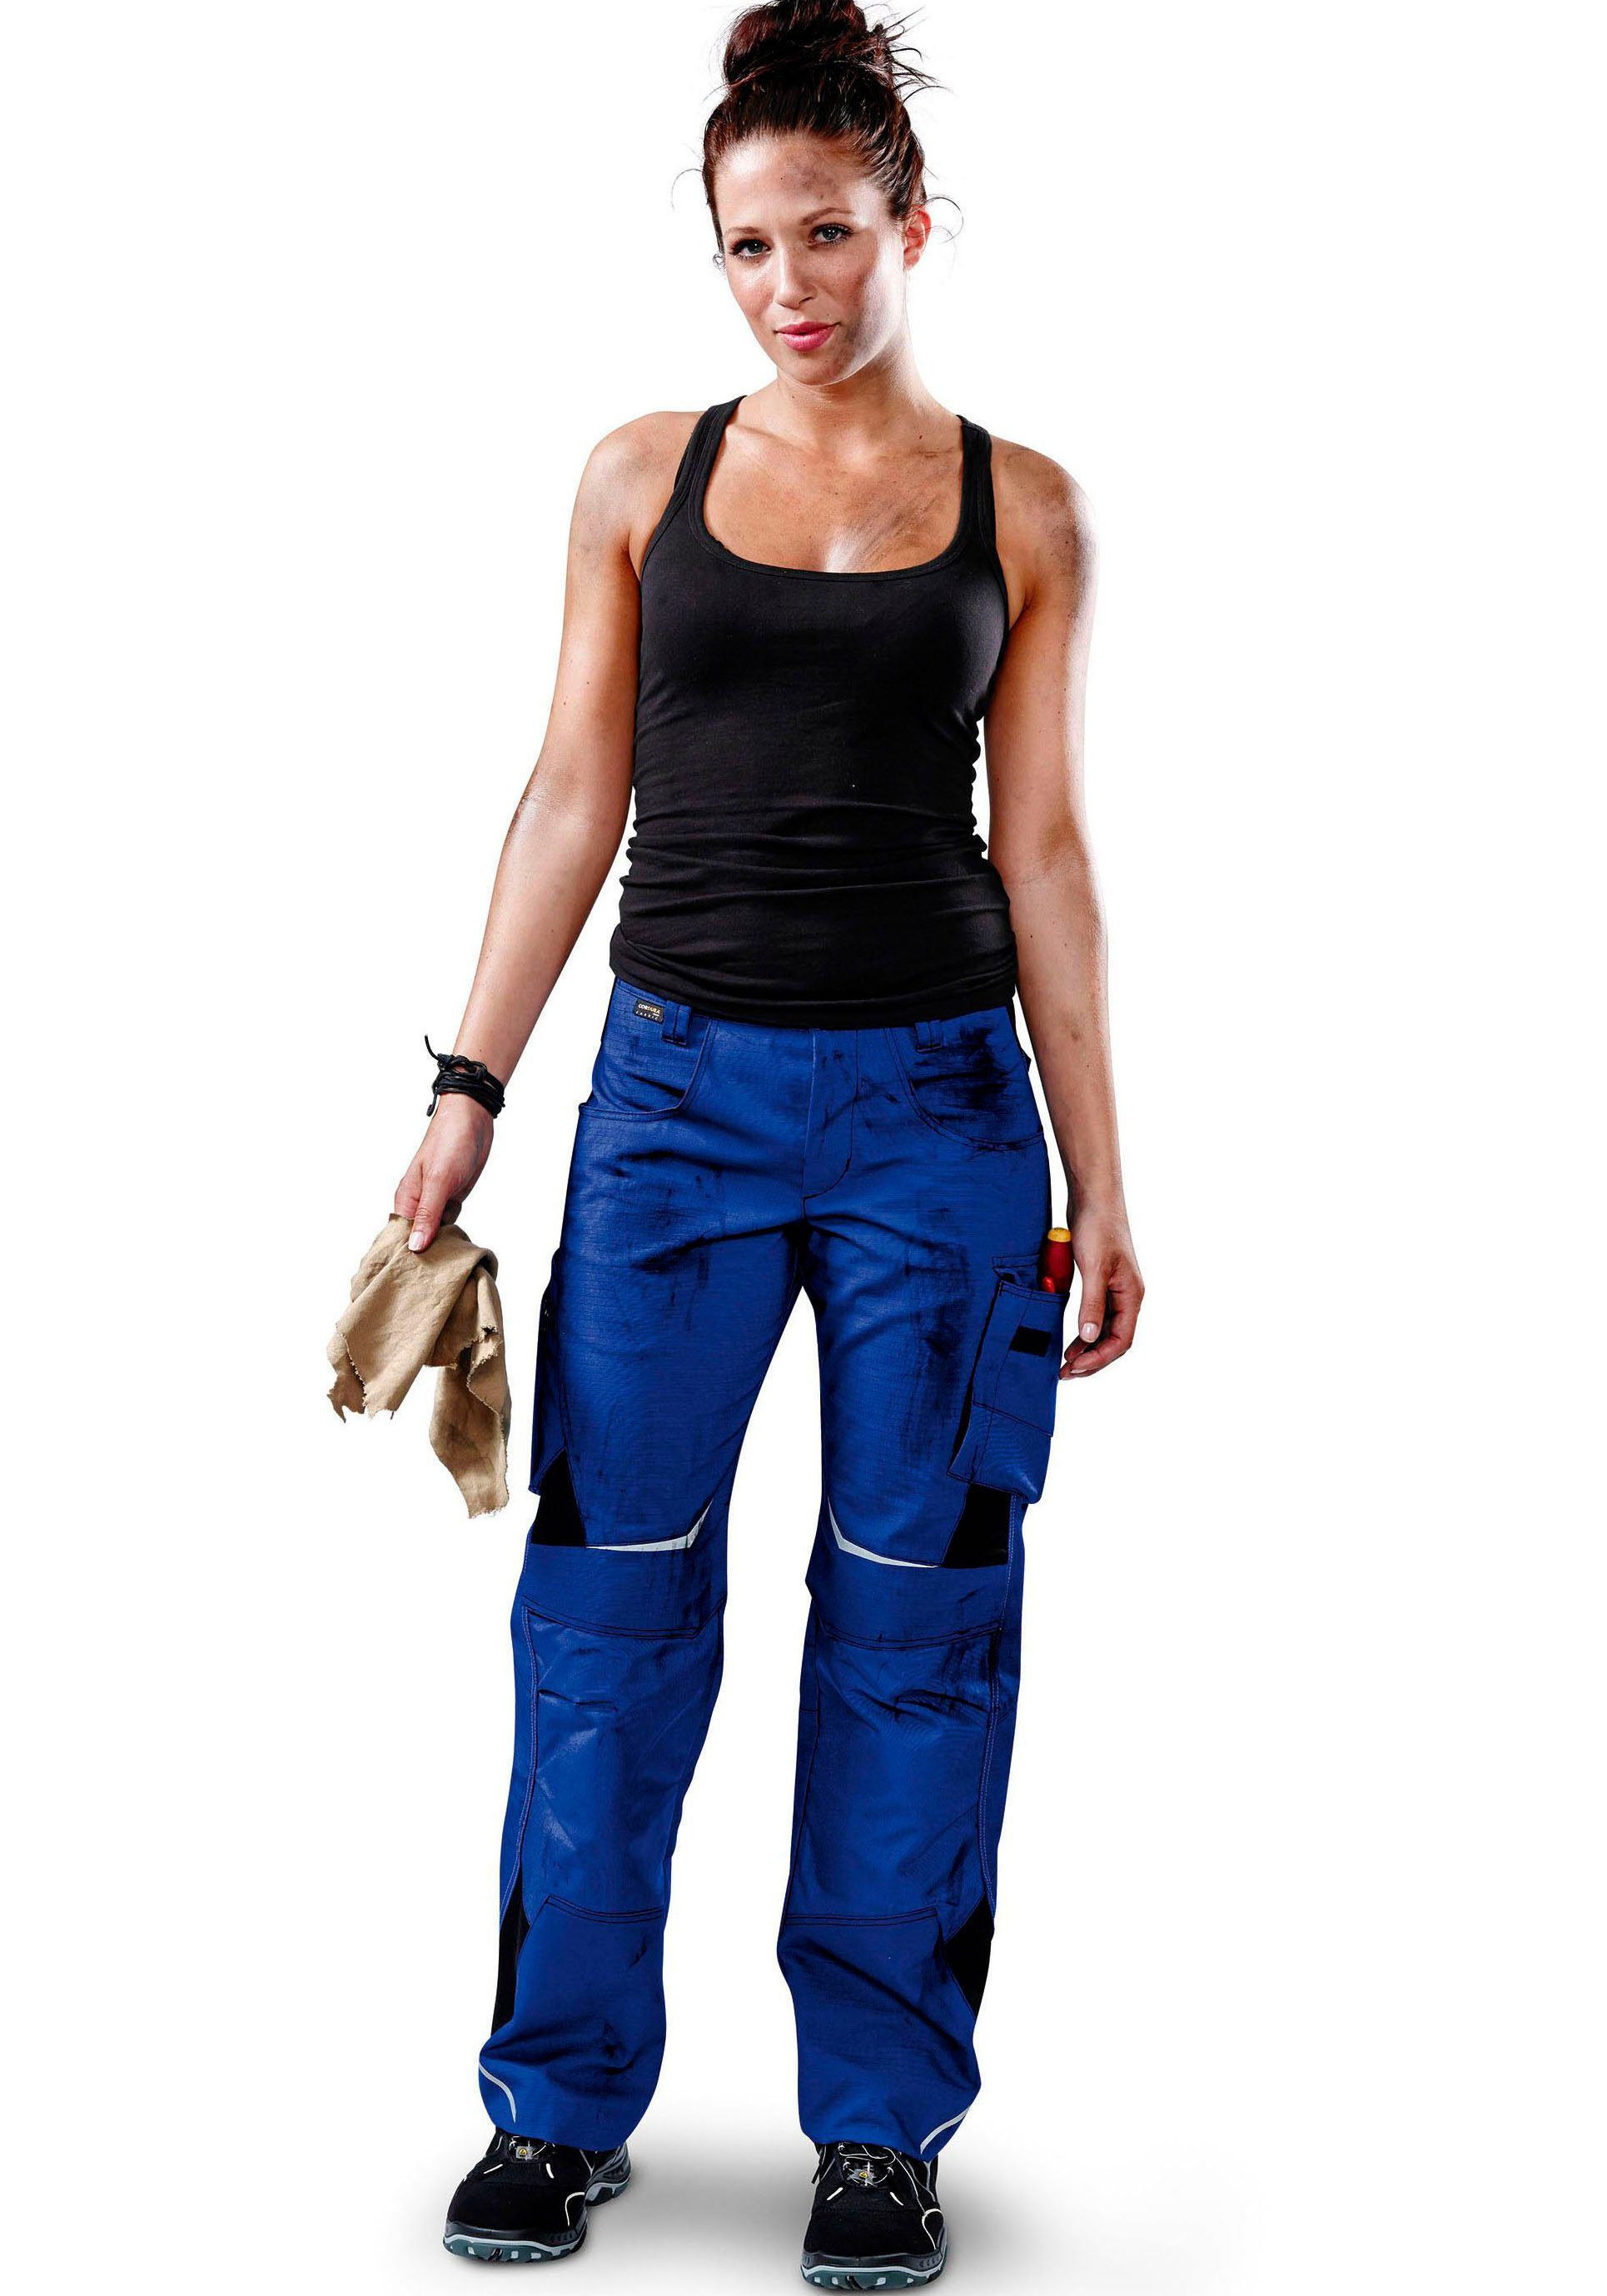 Kübler Arbeitshose PULSSCHLAG Damenhose HIGH PSA 2 Schmutz- und wasserabweisend kbl.blau/schwarz | Arbeitshosen